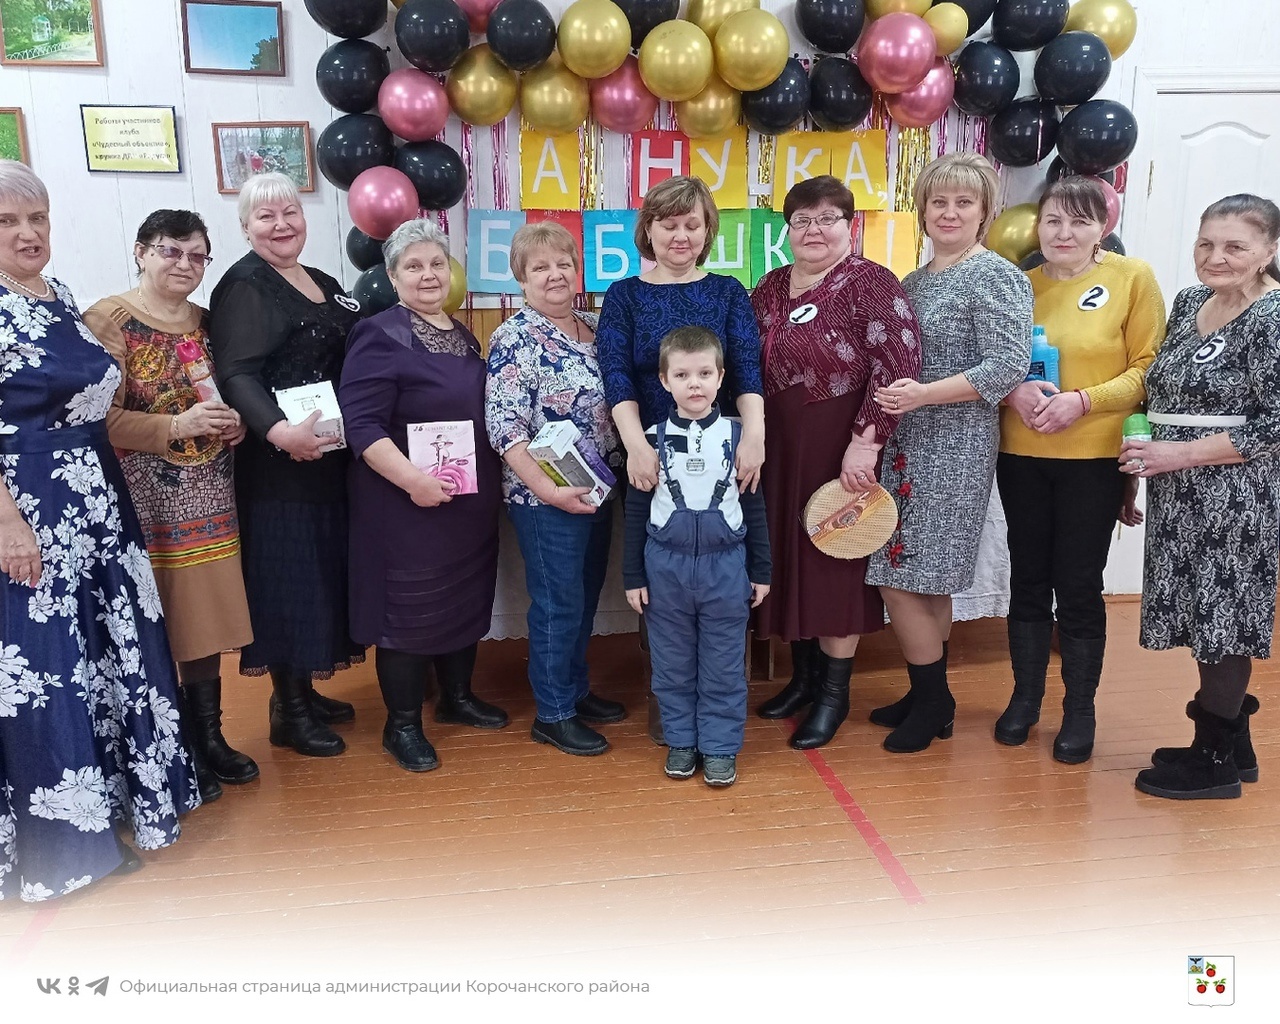 В Новослободском СДК состоялась конкурсно-развлекательная программа посвящённая Дню бабушек.